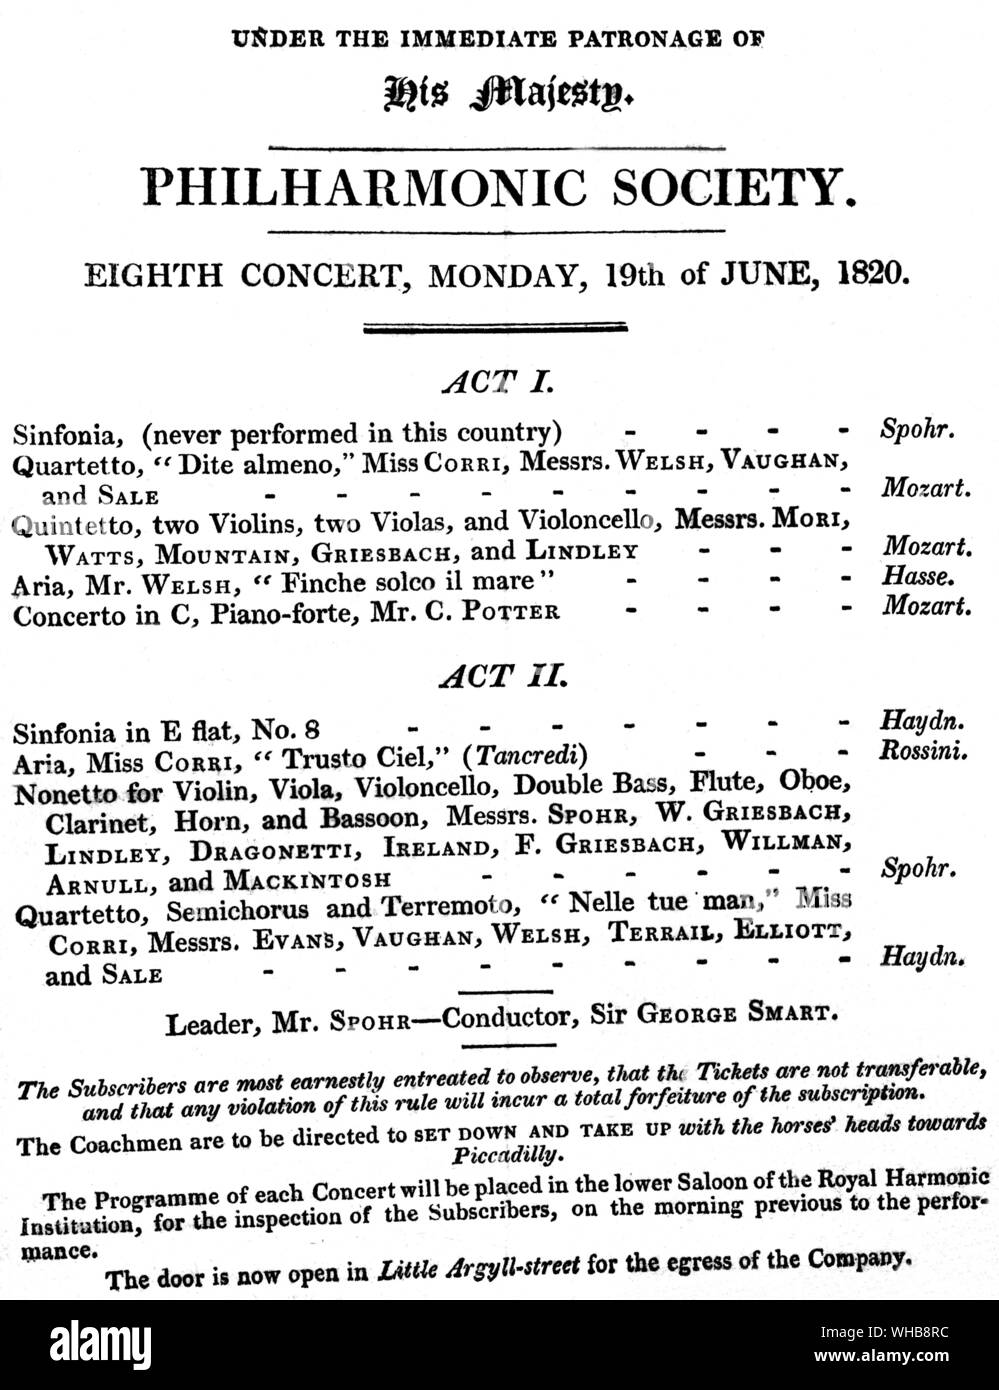 Der Philharmonischen Gesellschaft Programm für den 19. Juni 1820 - Die Gelegenheit, wenn Louis Spohr zunächst den Staffelstab verwendet - der Royal Philharmonic Society, London (J. R. Freeman). Stockfoto